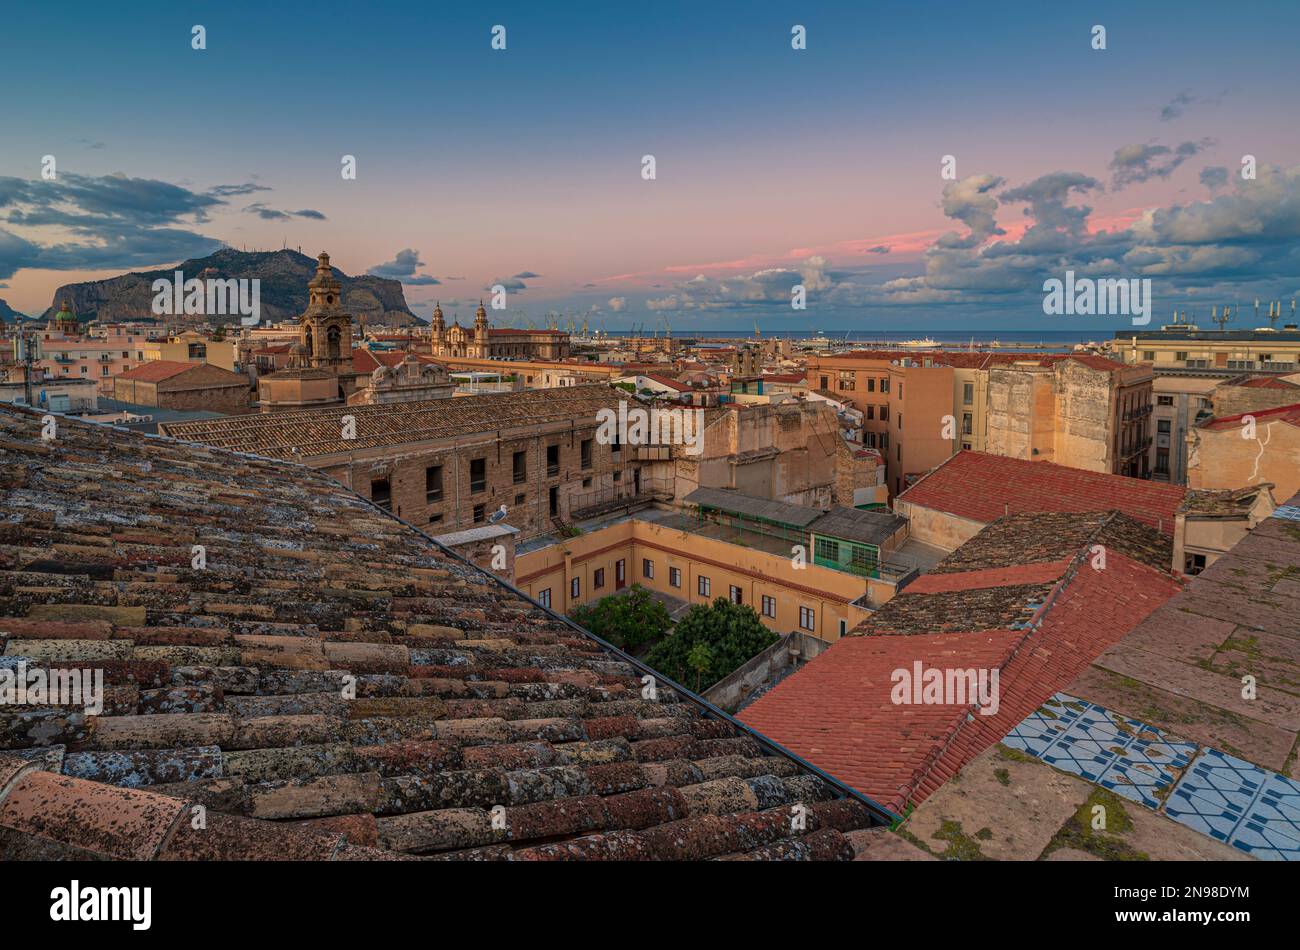 La città di Palermo vista dai tetti al crepuscolo, la Sicilia Foto Stock